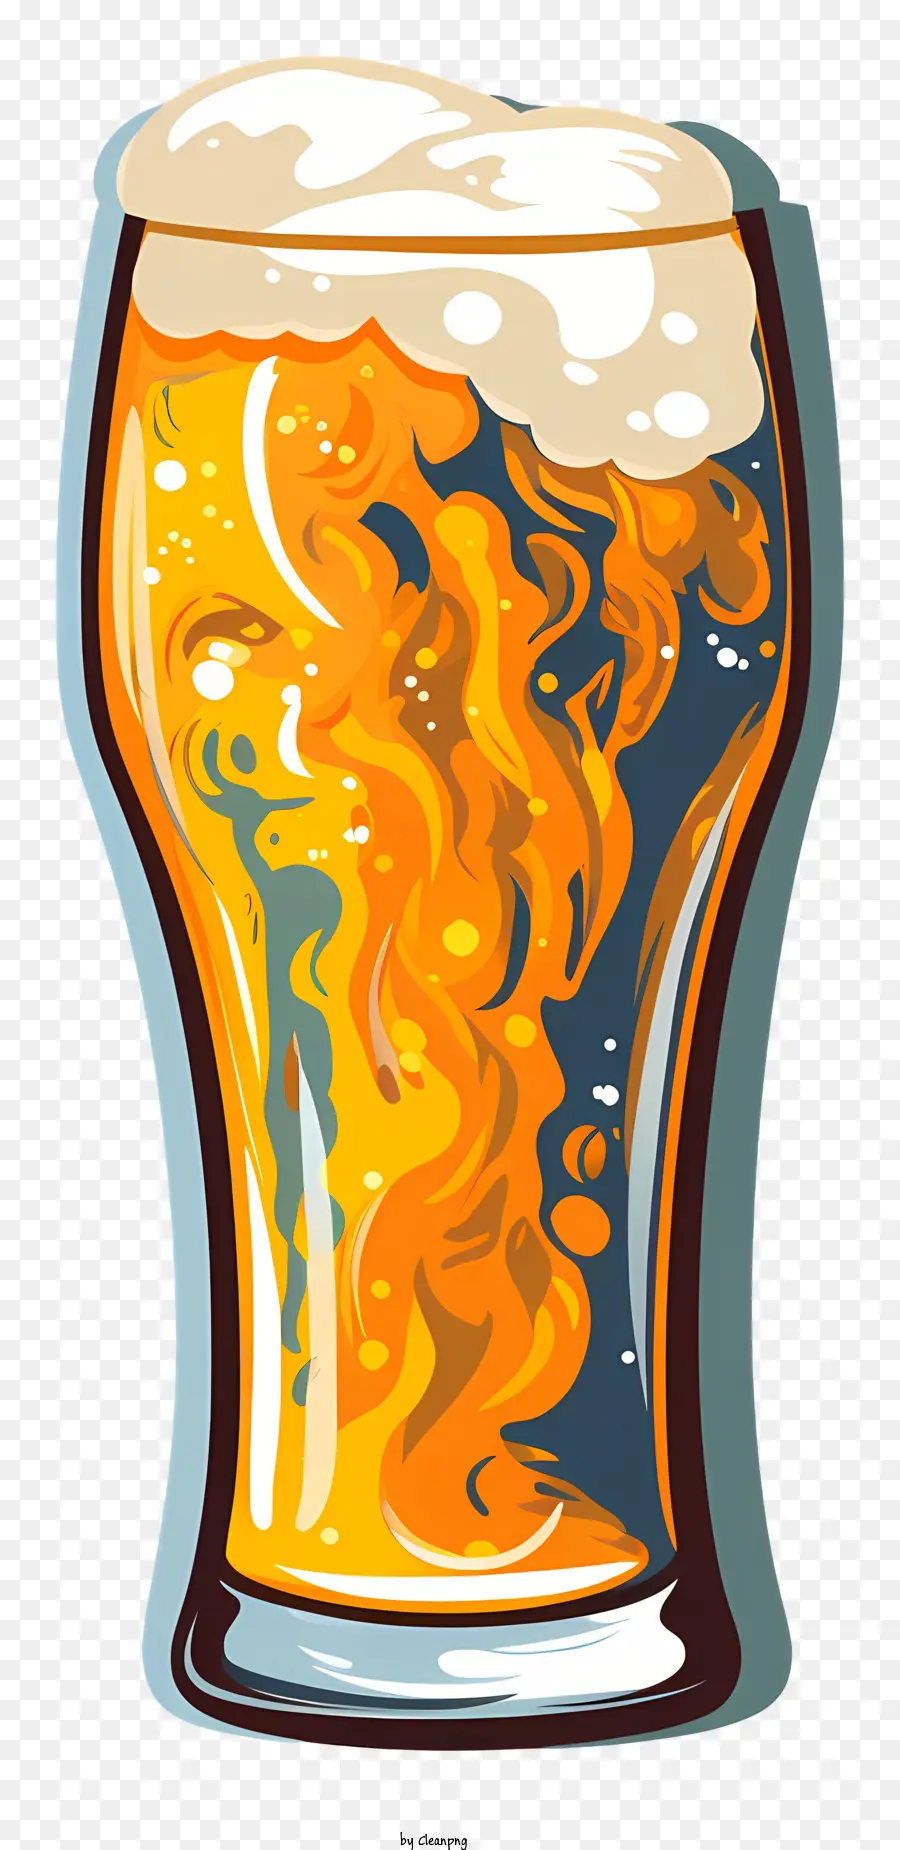 Modello frattale in schiuma di birra Ambra birra viscosa - Birra schiumosa con motivi frattali vorticosi